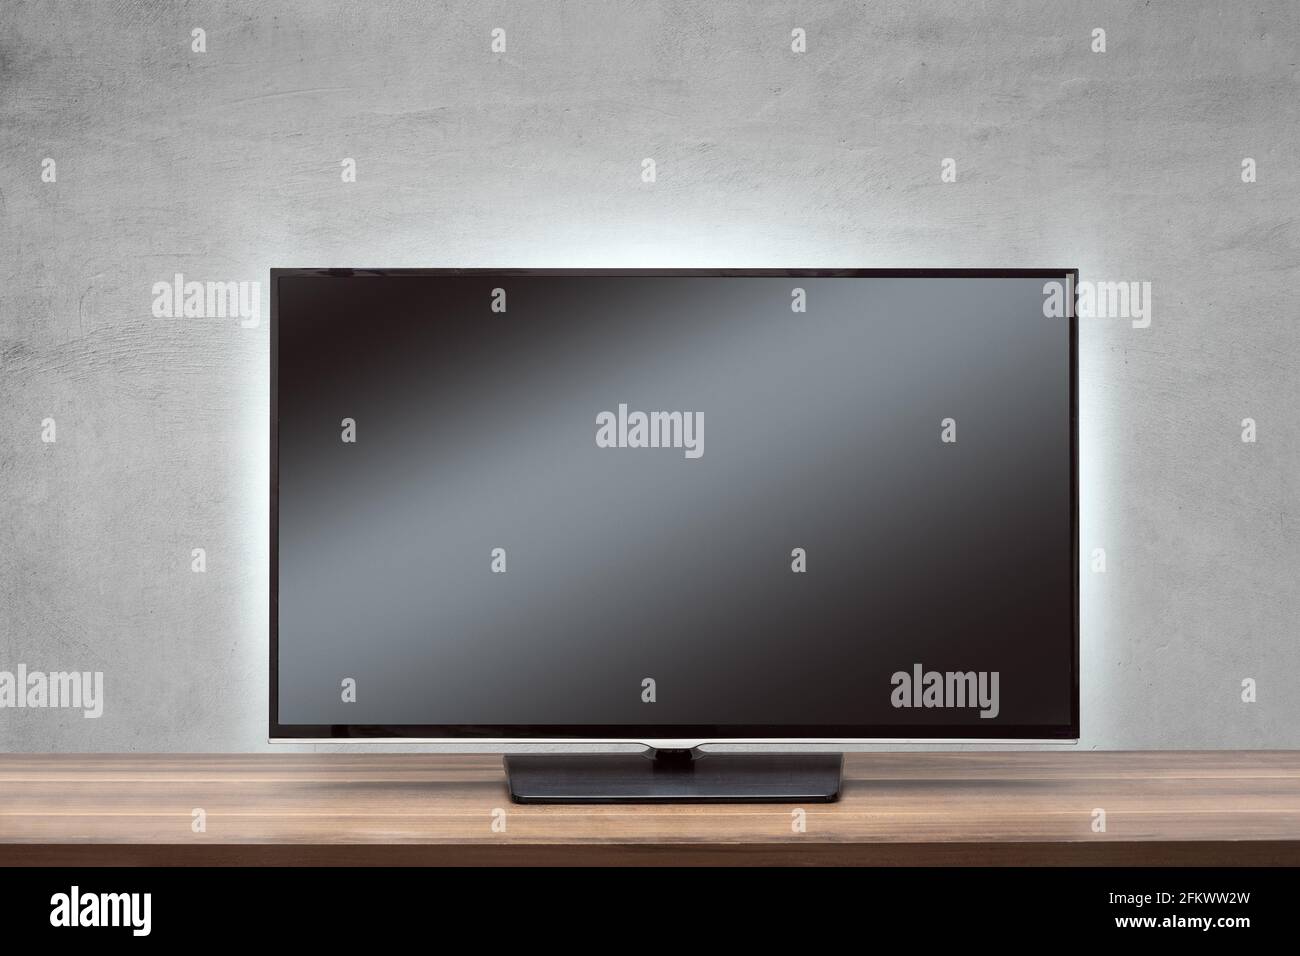 Téléviseur avec écran noir sur une surface en bois Banque D'Images